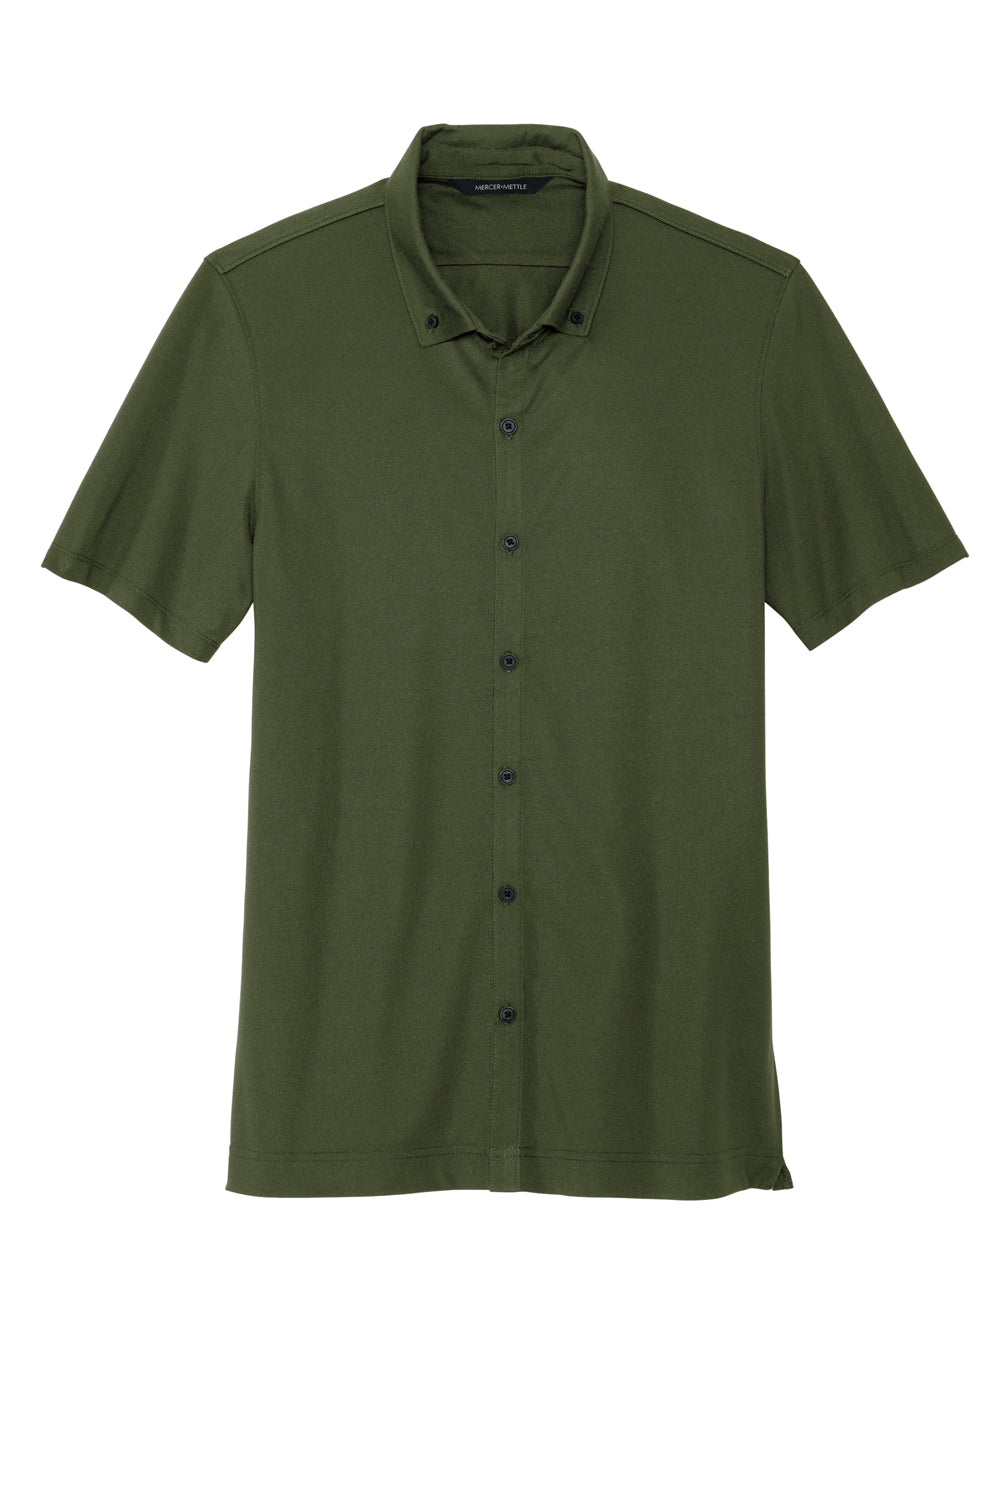 Mercer+Mettle MM1006 Stretch Pique Short Sleeve Button Down Shirt Townsend Green Flat Front